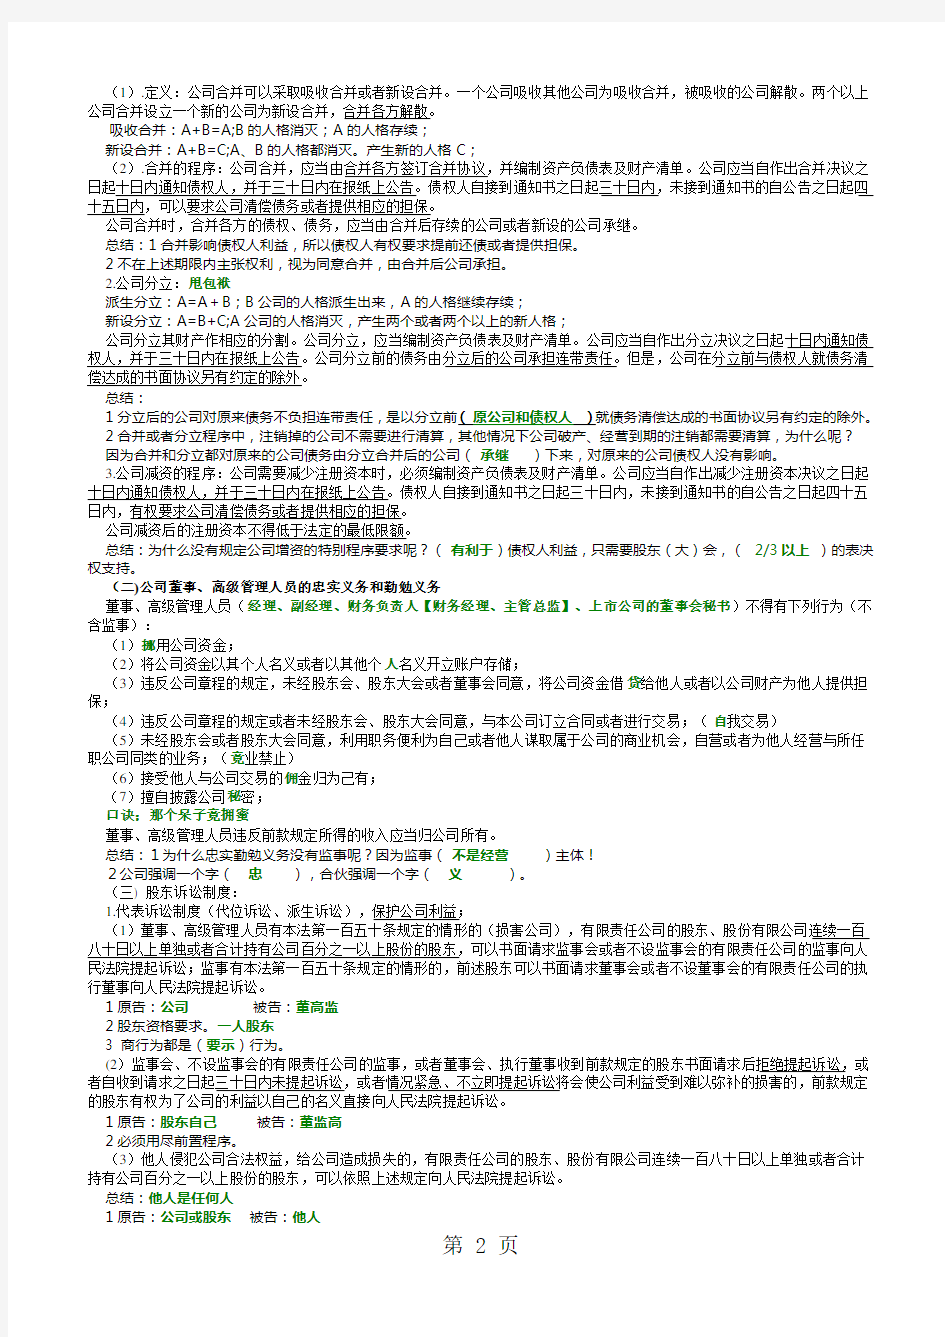 2019年张海峡商经讲义完美版含笔记整理共38页word资料